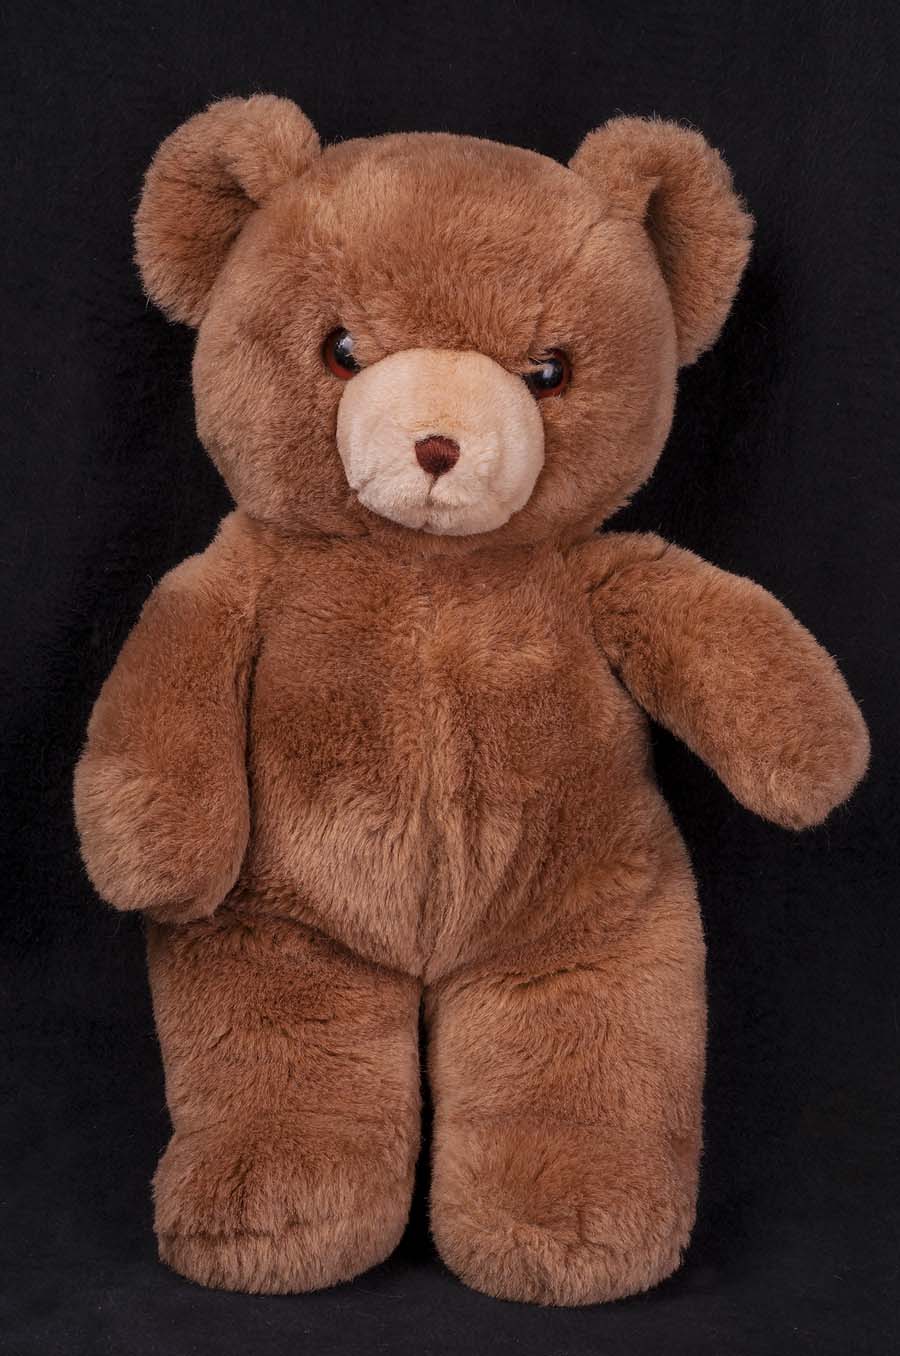 80's teddy bear toys